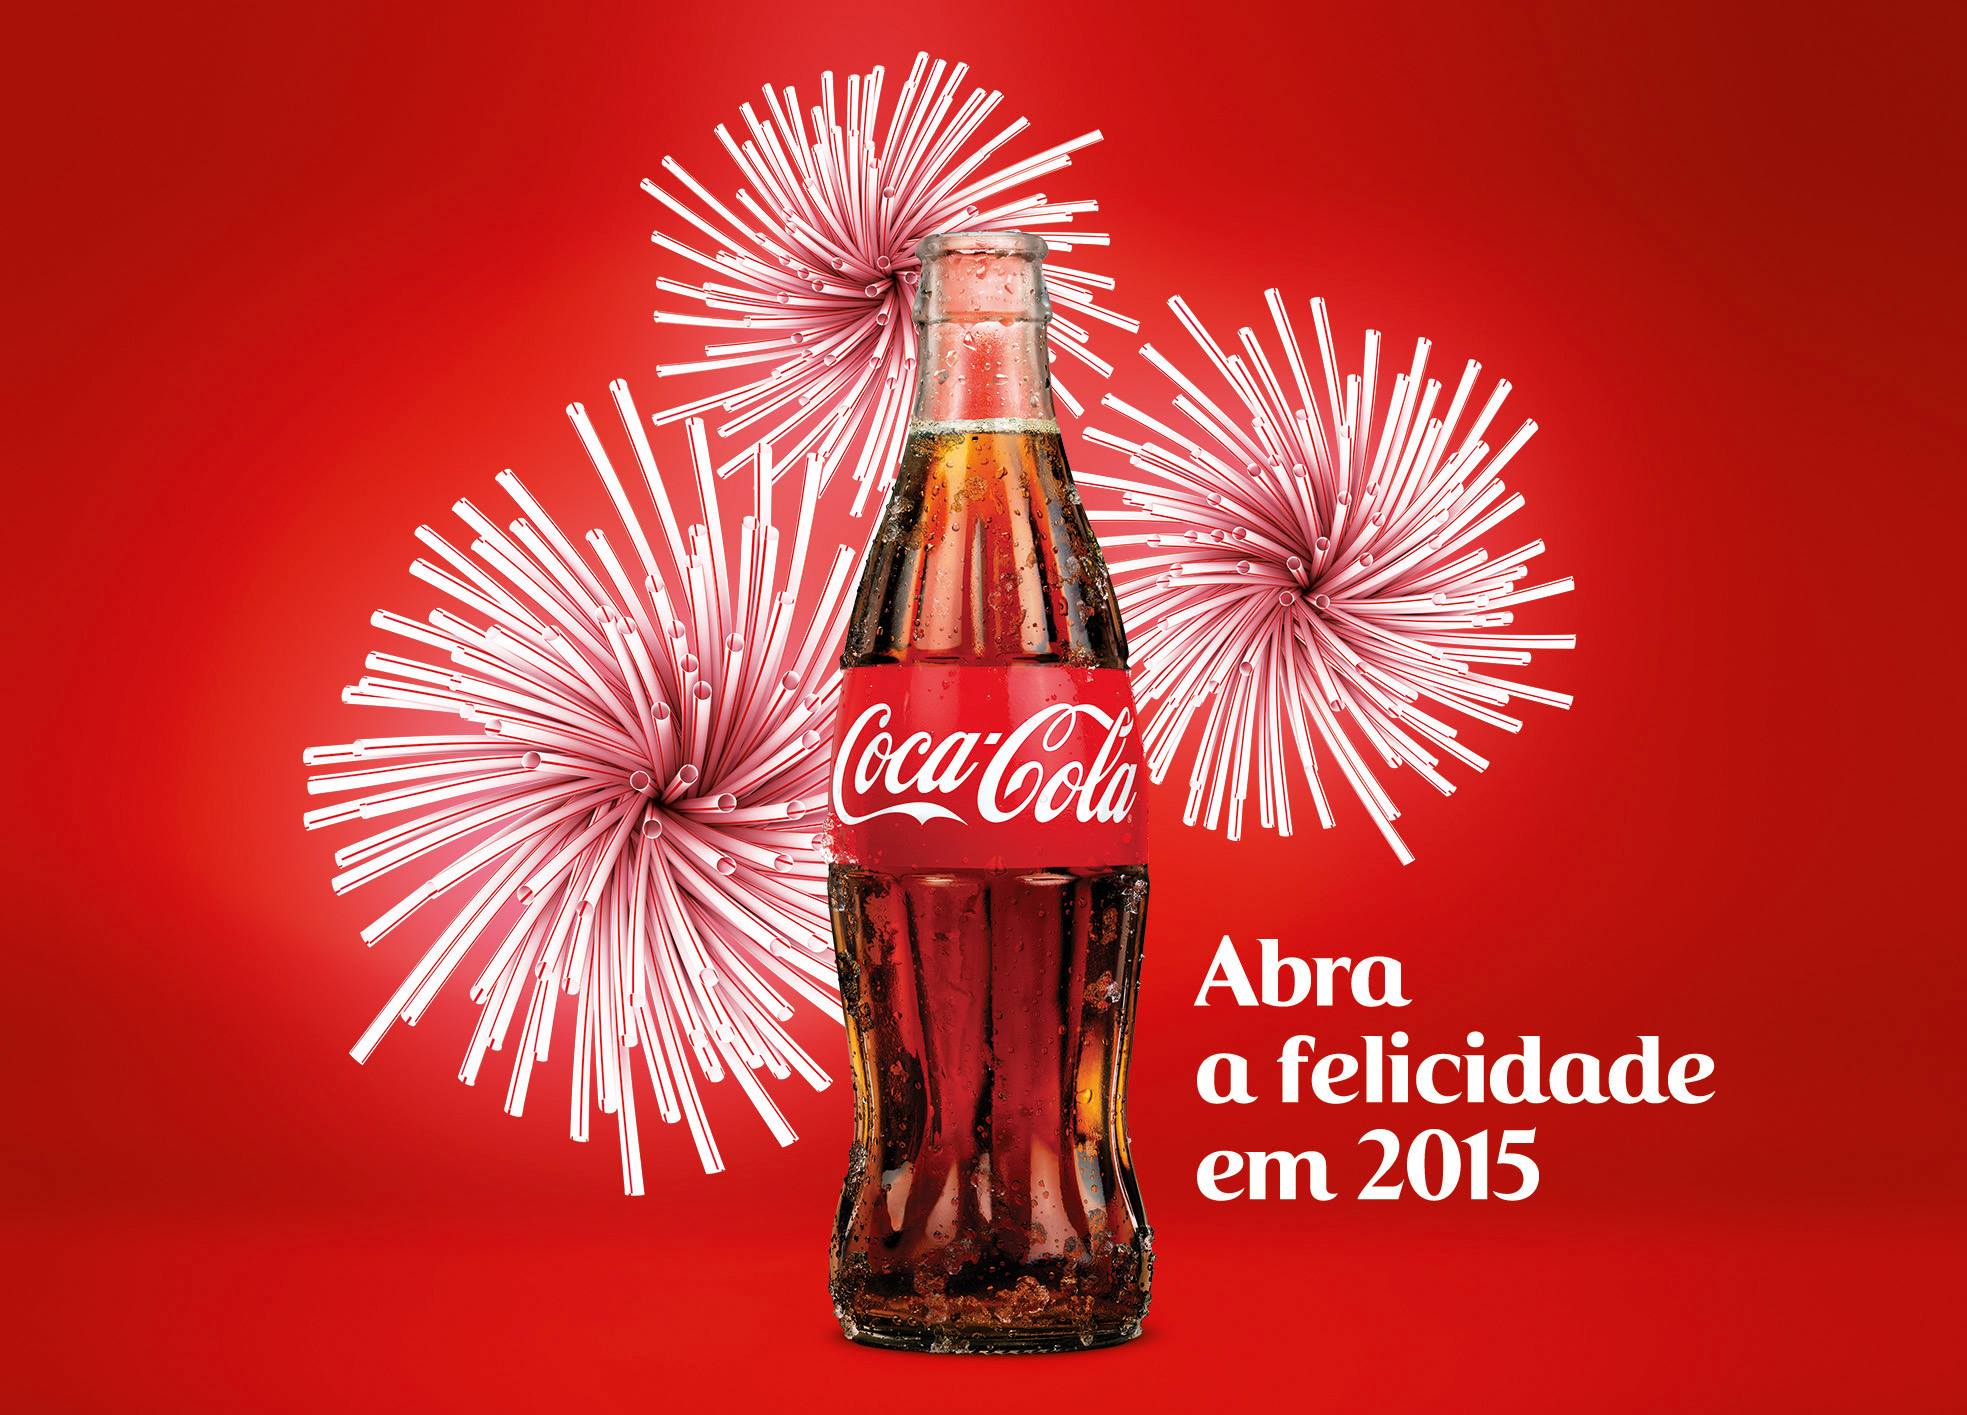 Coca-Cola transforma fogos em canudos – Meio & Mensagem